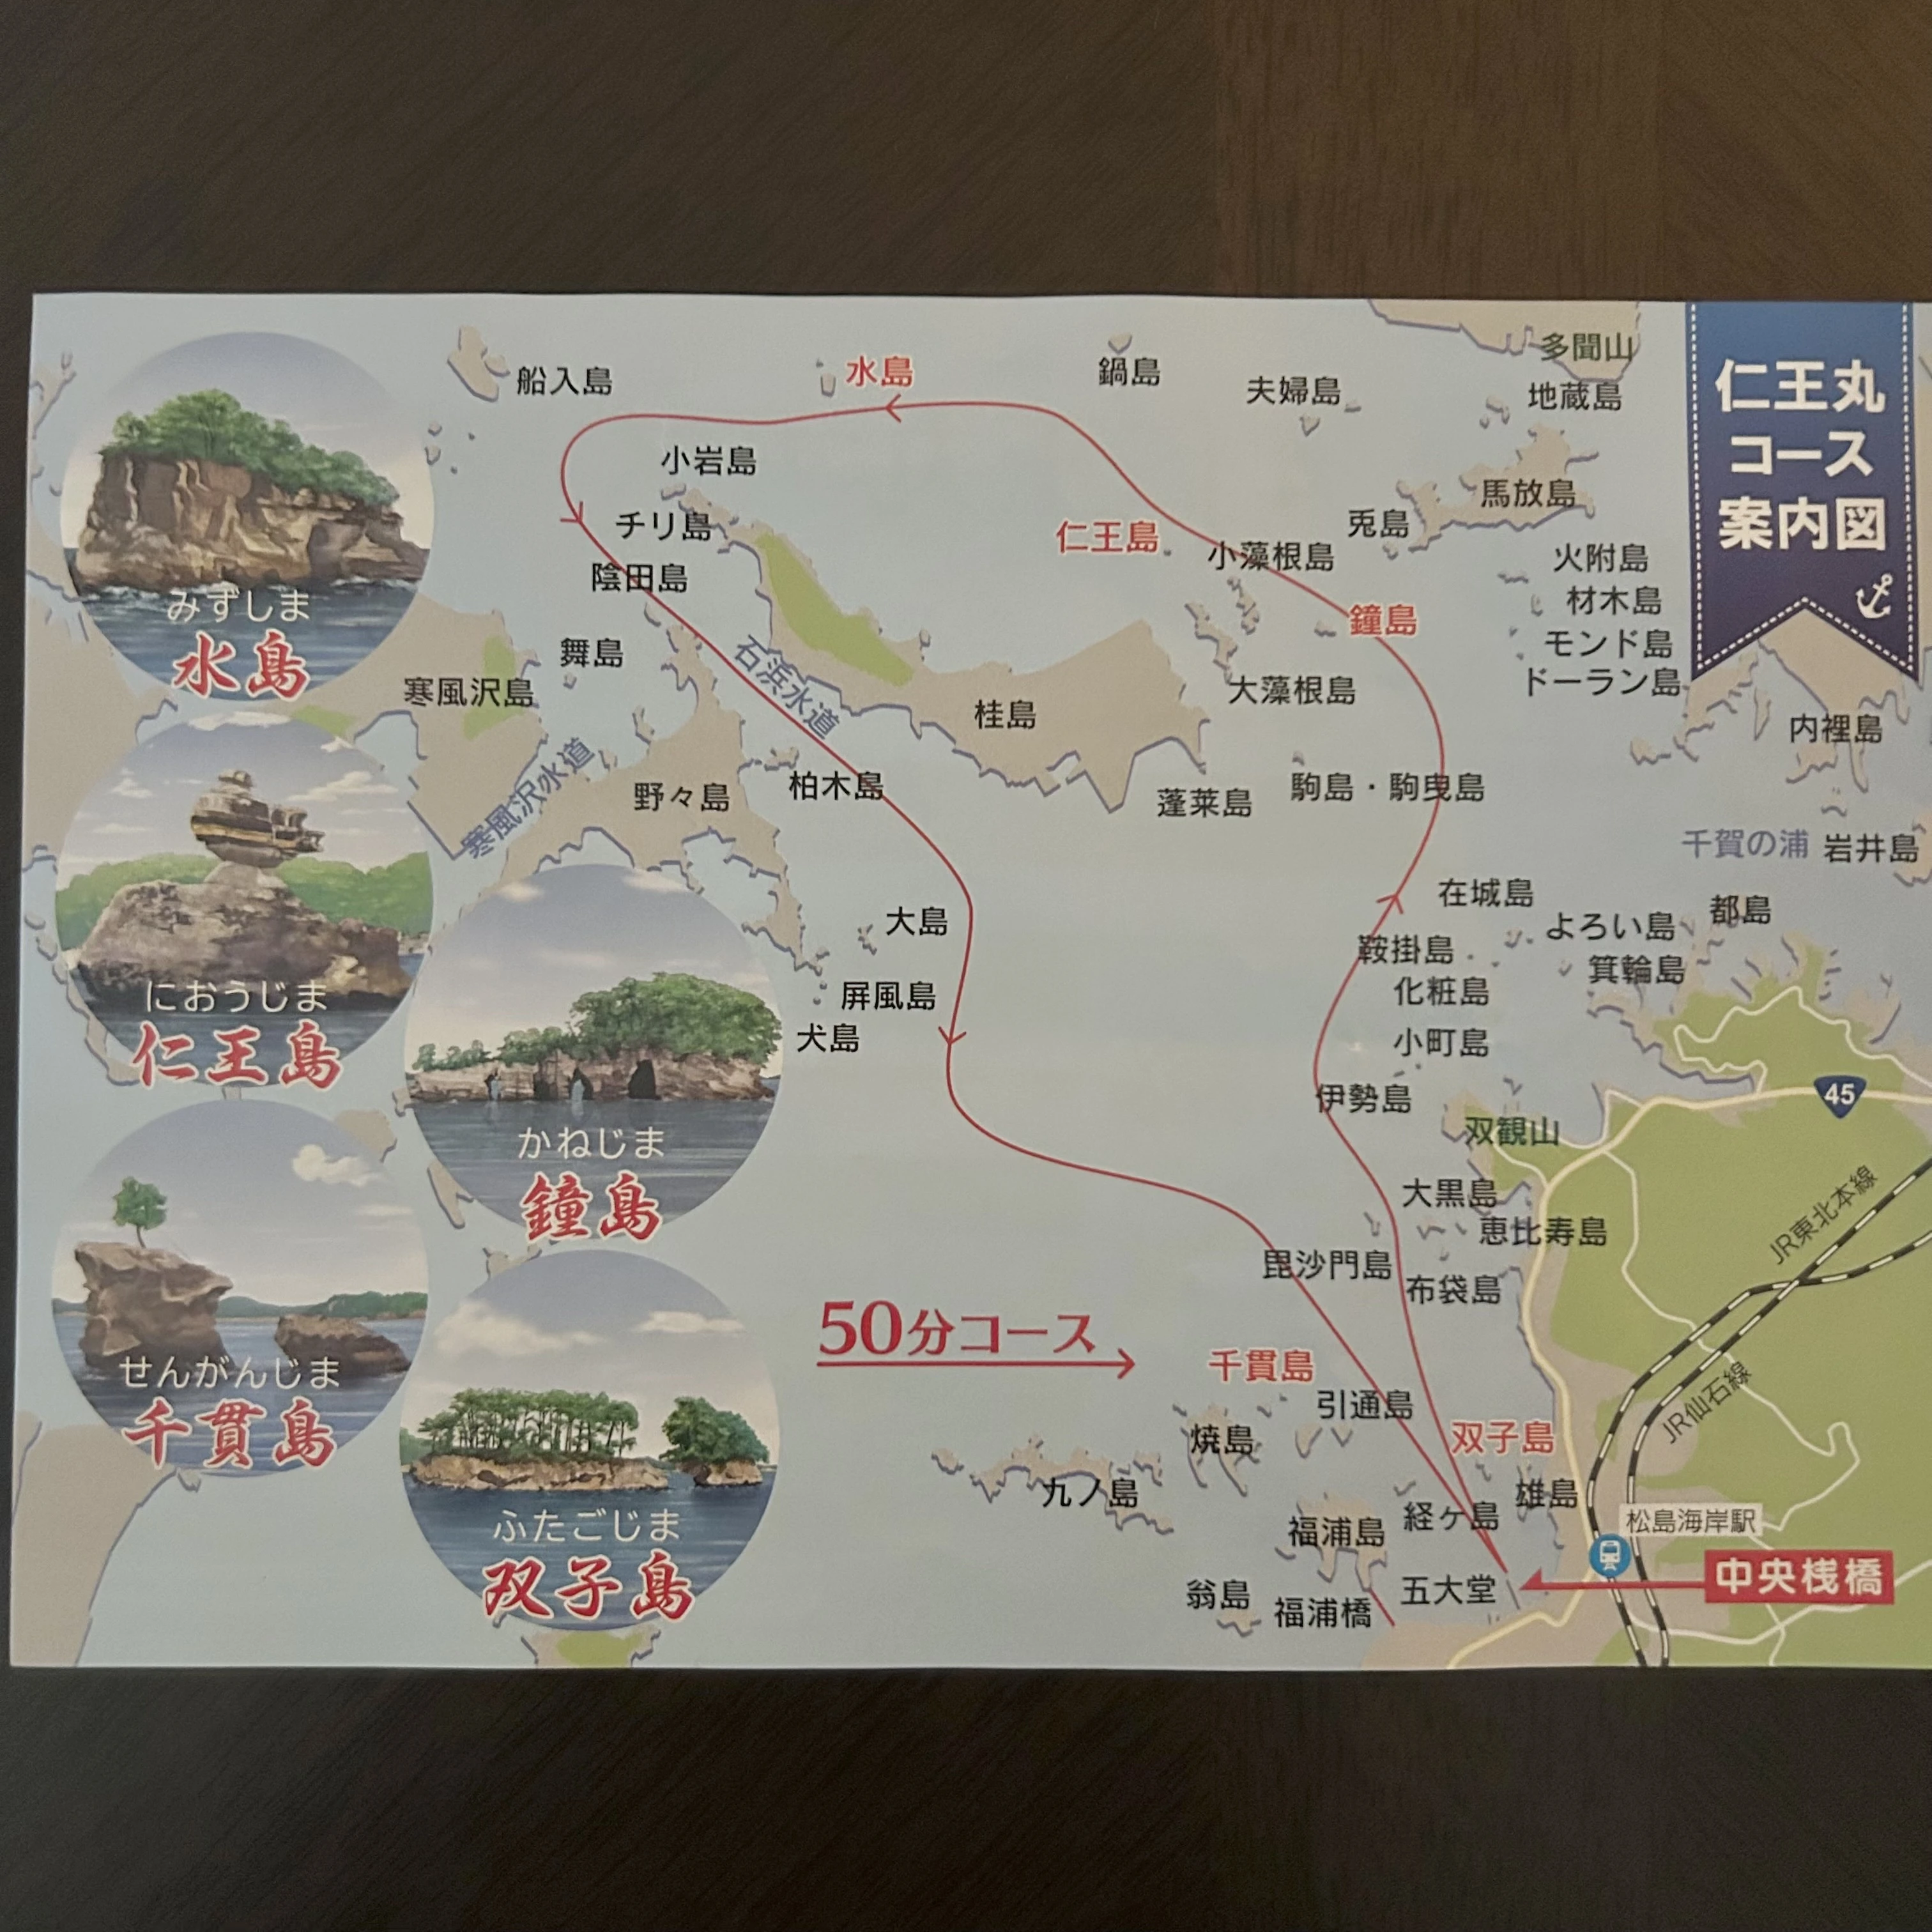 松島湾観光遊覧船、松島観光、日本三景